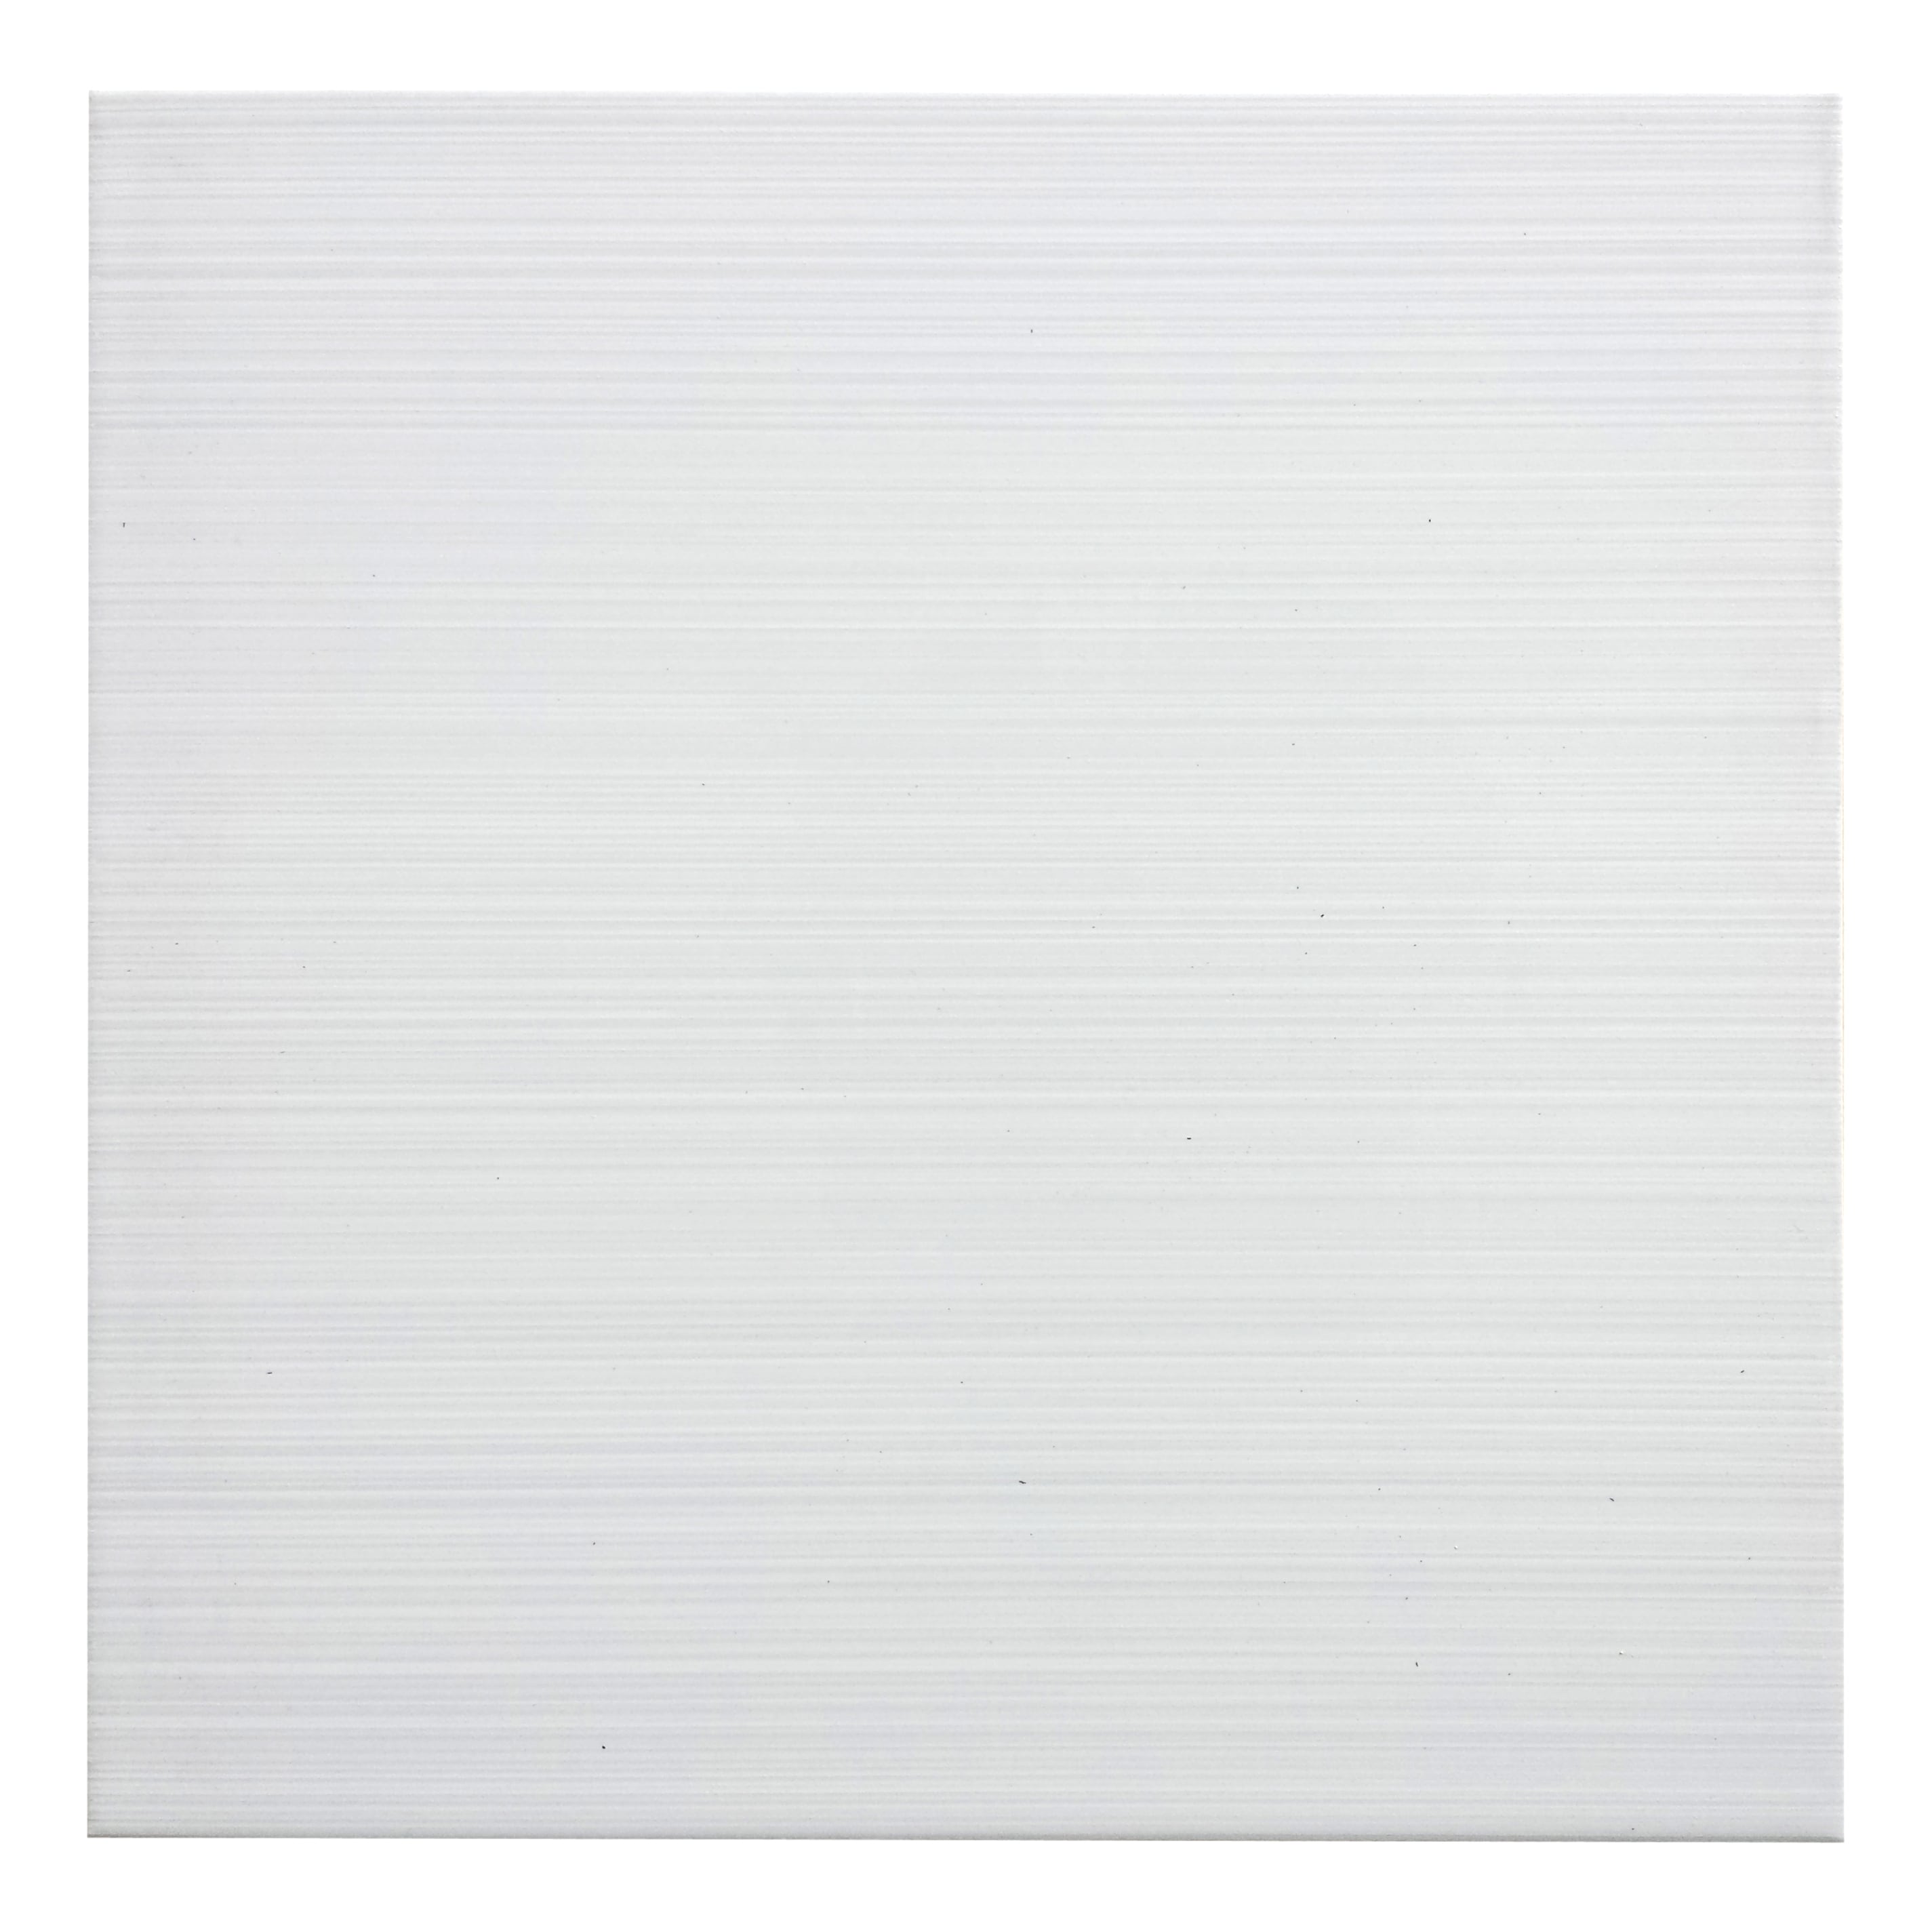 Blairlock White Ceramic In The Tile, 13×13 Floor Tile